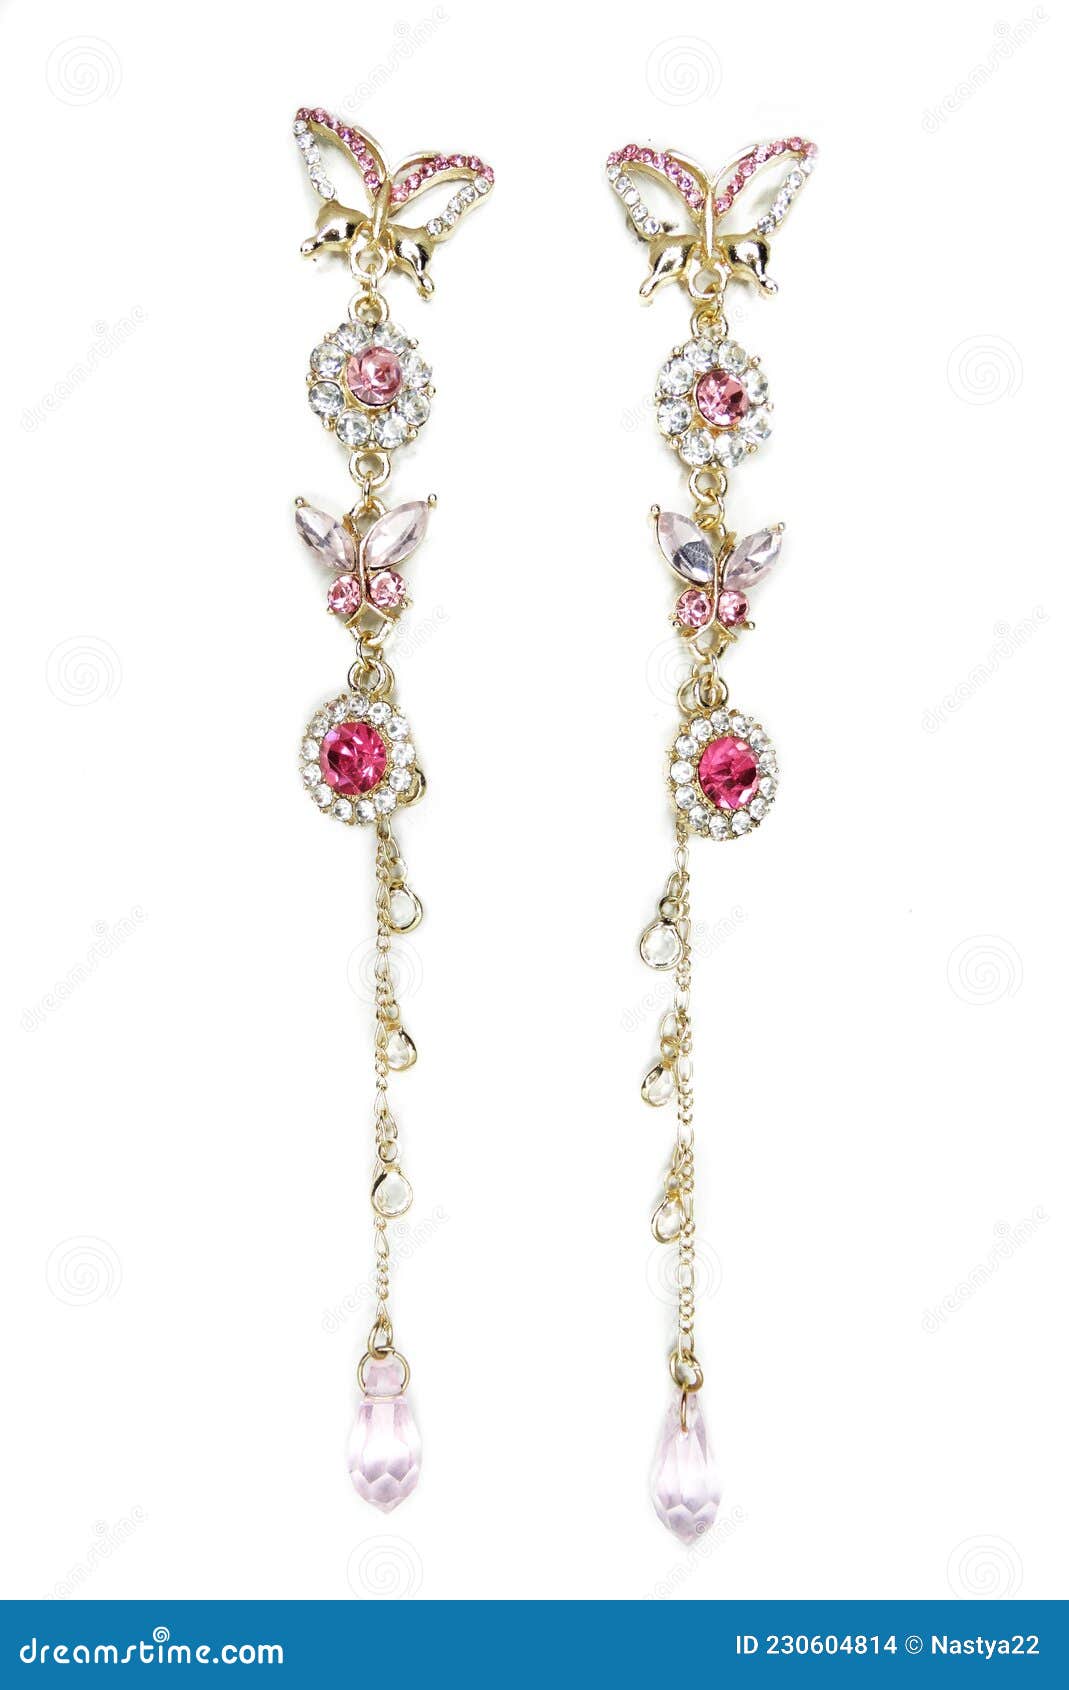 https://thumbs.dreamstime.com/z/fondo-de-aretes-moda-joyer%C3%ADa-con-cristales-coloridos-pendientes-collar-perlas-brillantes-230604814.jpg